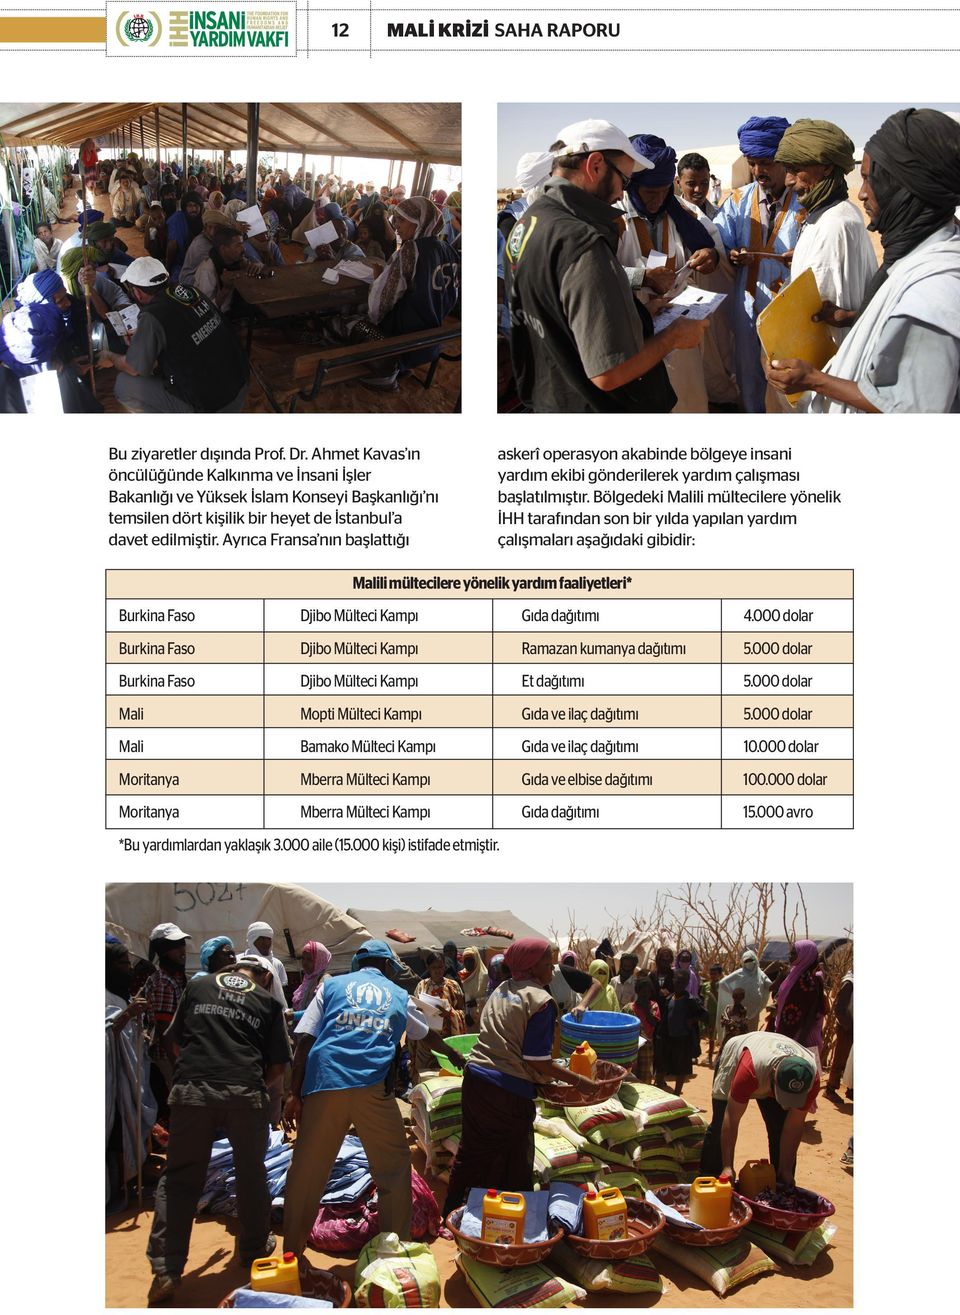 Bölgedeki Malili mültecilere yönelik İHH tarafından son bir yılda yapılan yardım çalışmaları aşağıdaki gibidir: Malili mültecilere yönelik yardım faaliyetleri* Burkina Faso Djibo Mülteci Kampı Gıda